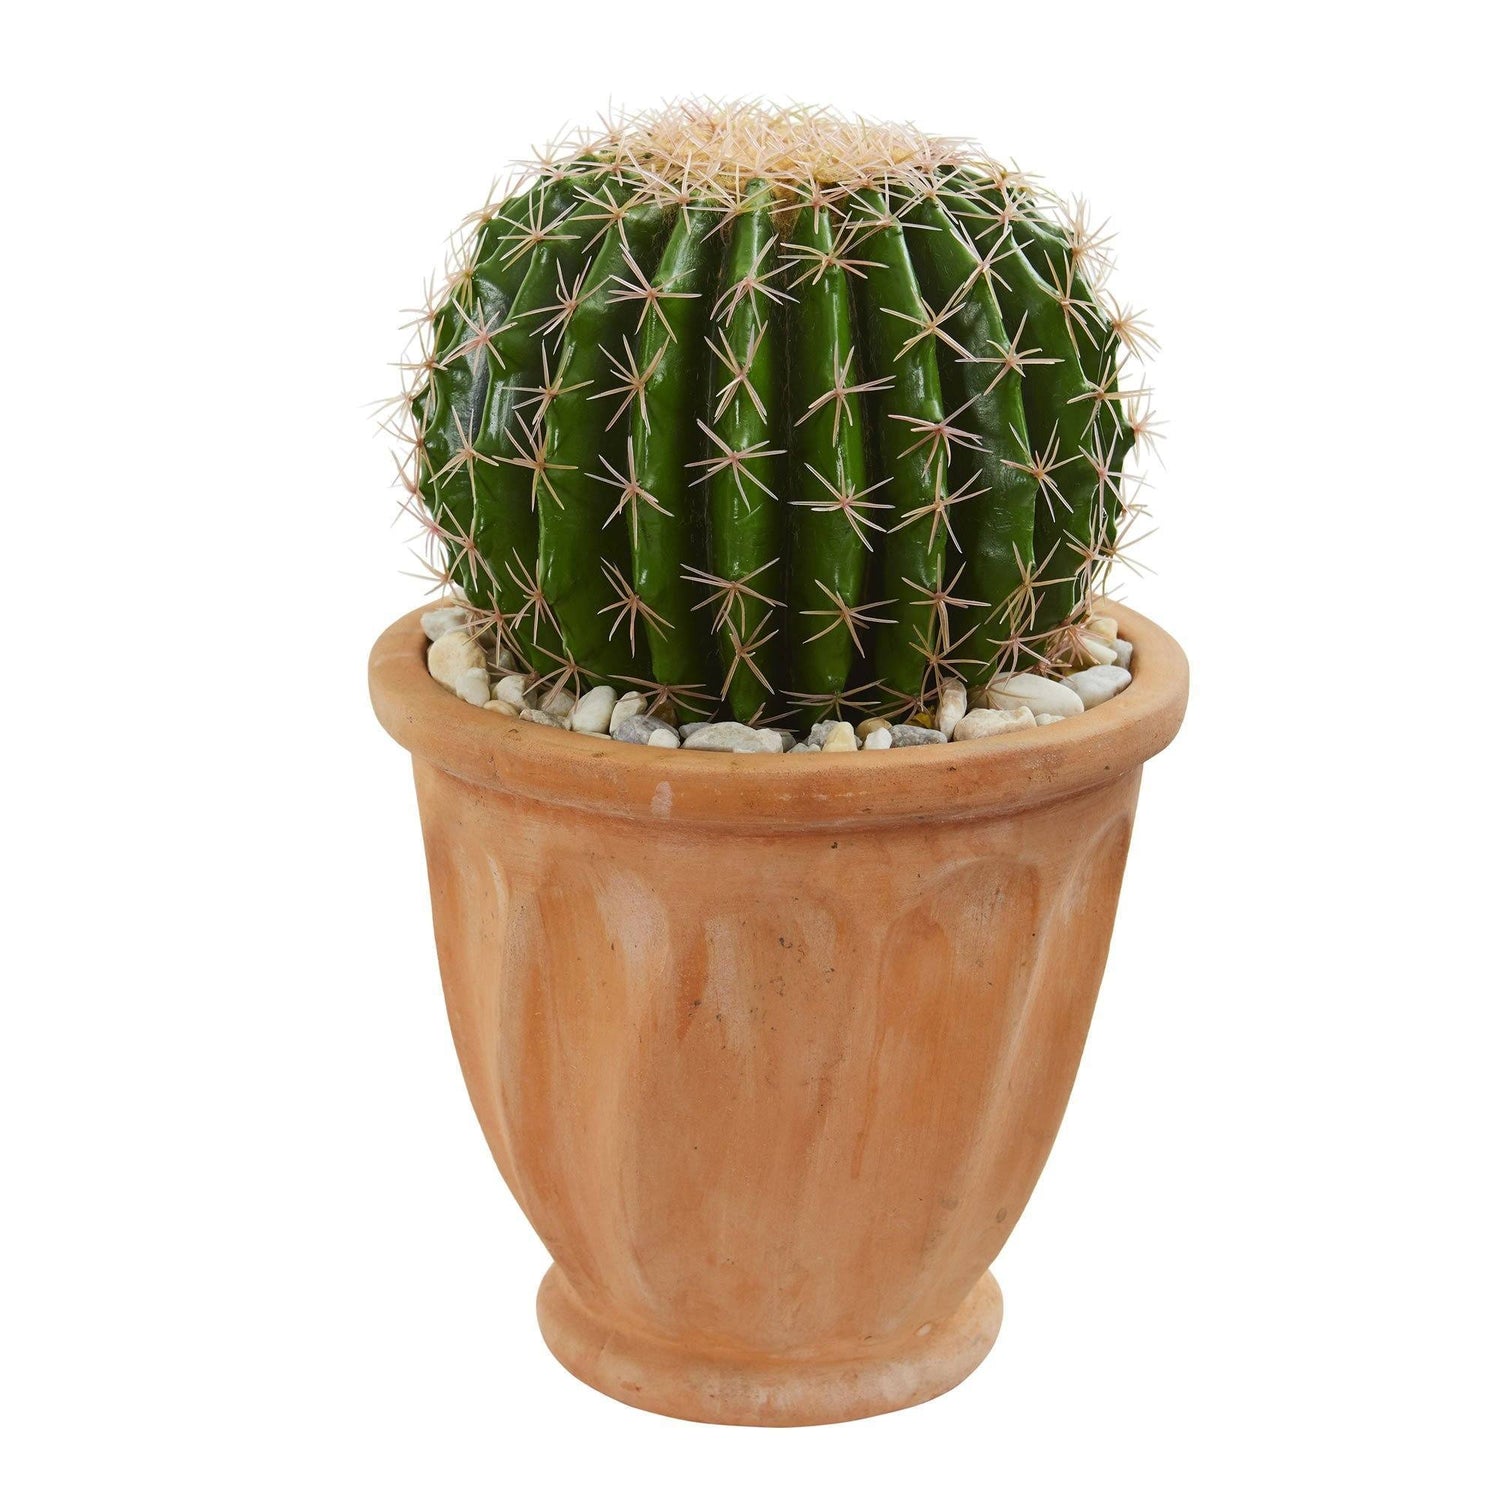 19" Cactus Artificial Plant in Terra Cotta Planter"